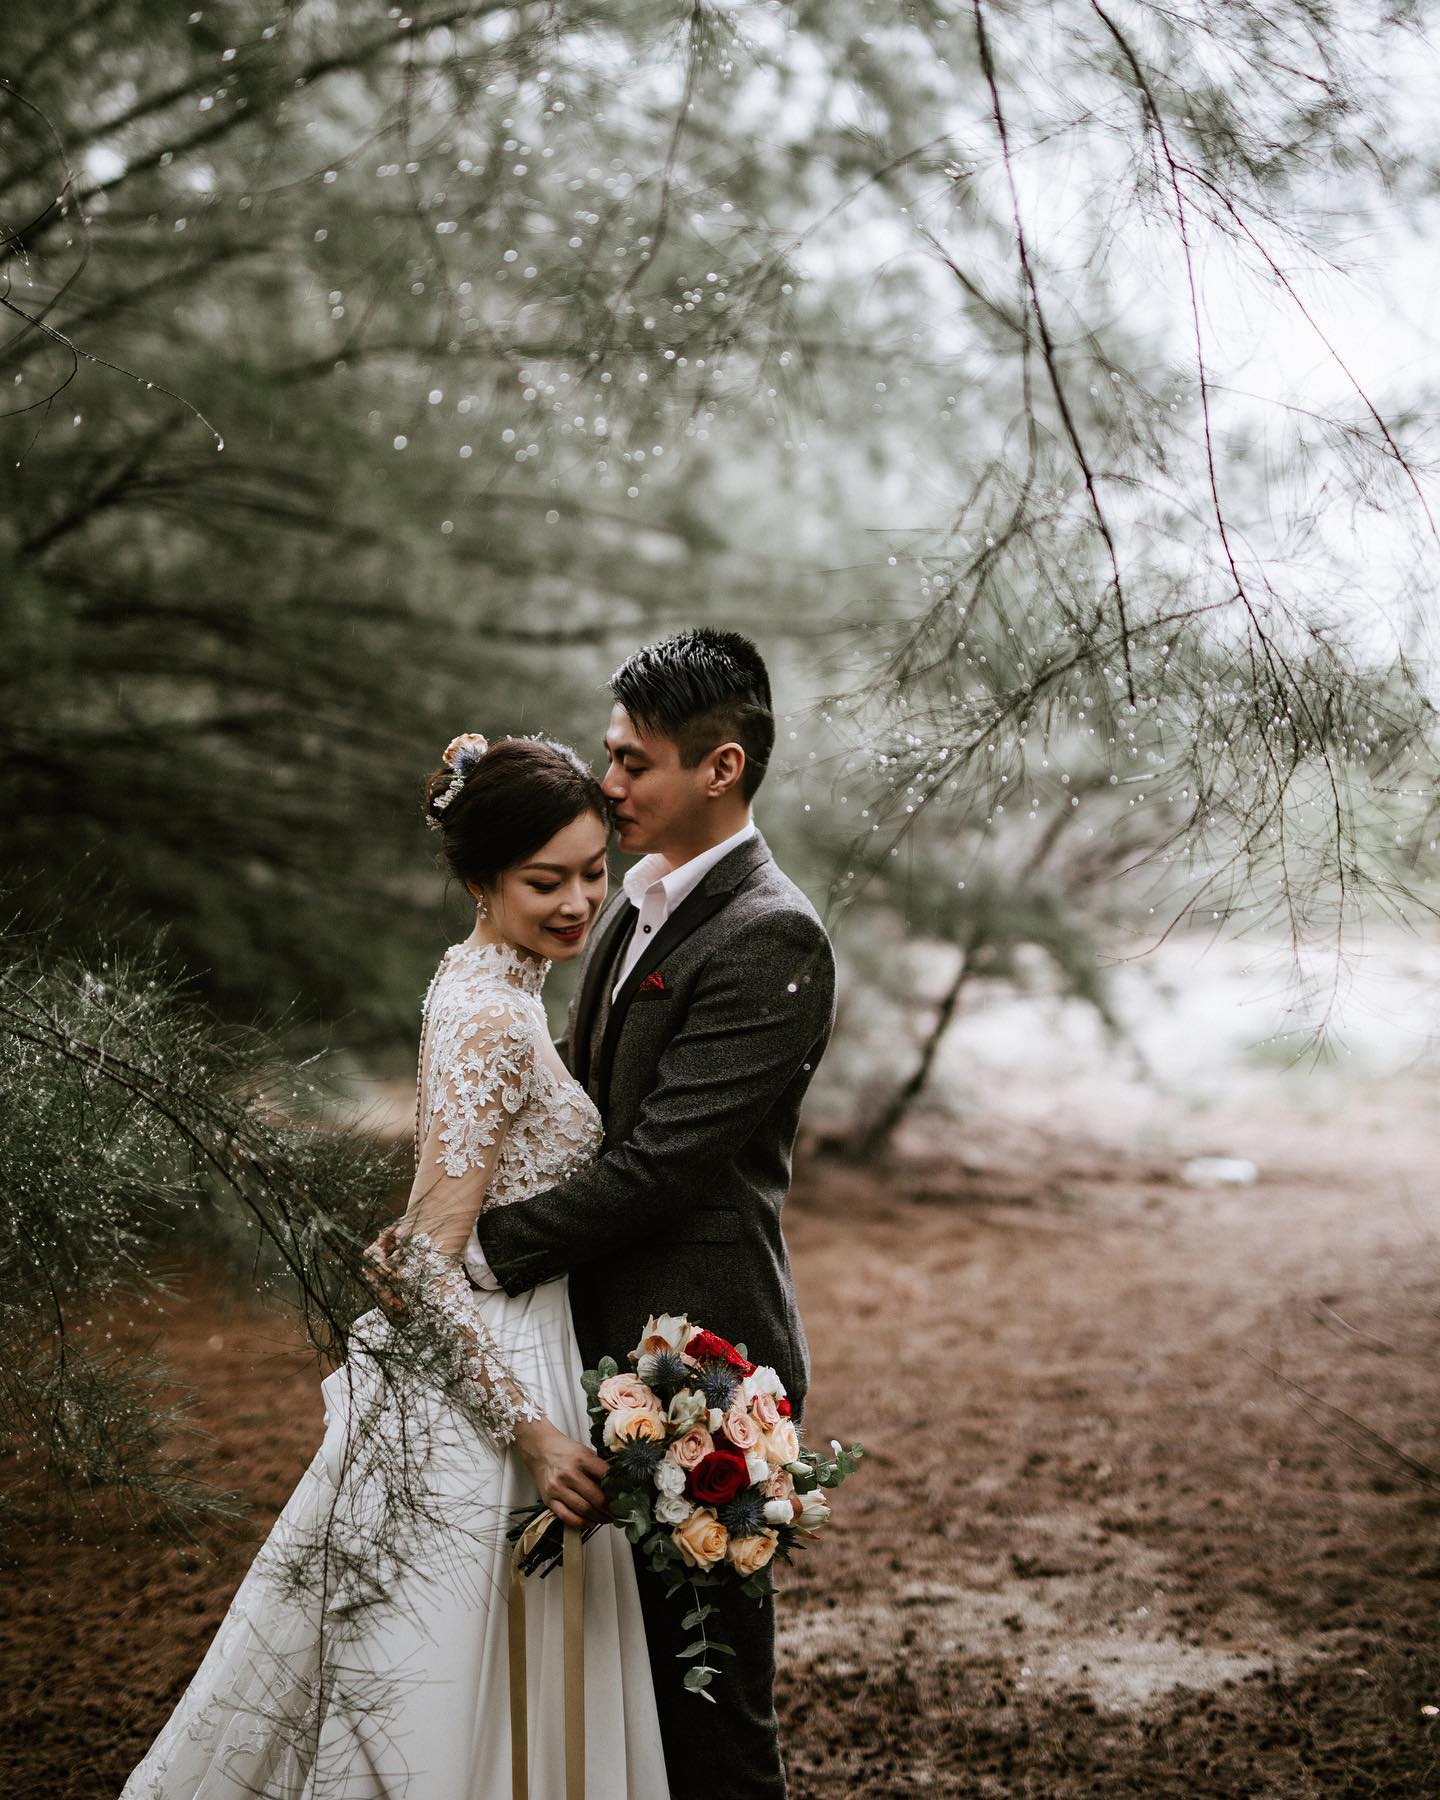 Jia Ming & Wei Ni’s Pre-wedding Shoot